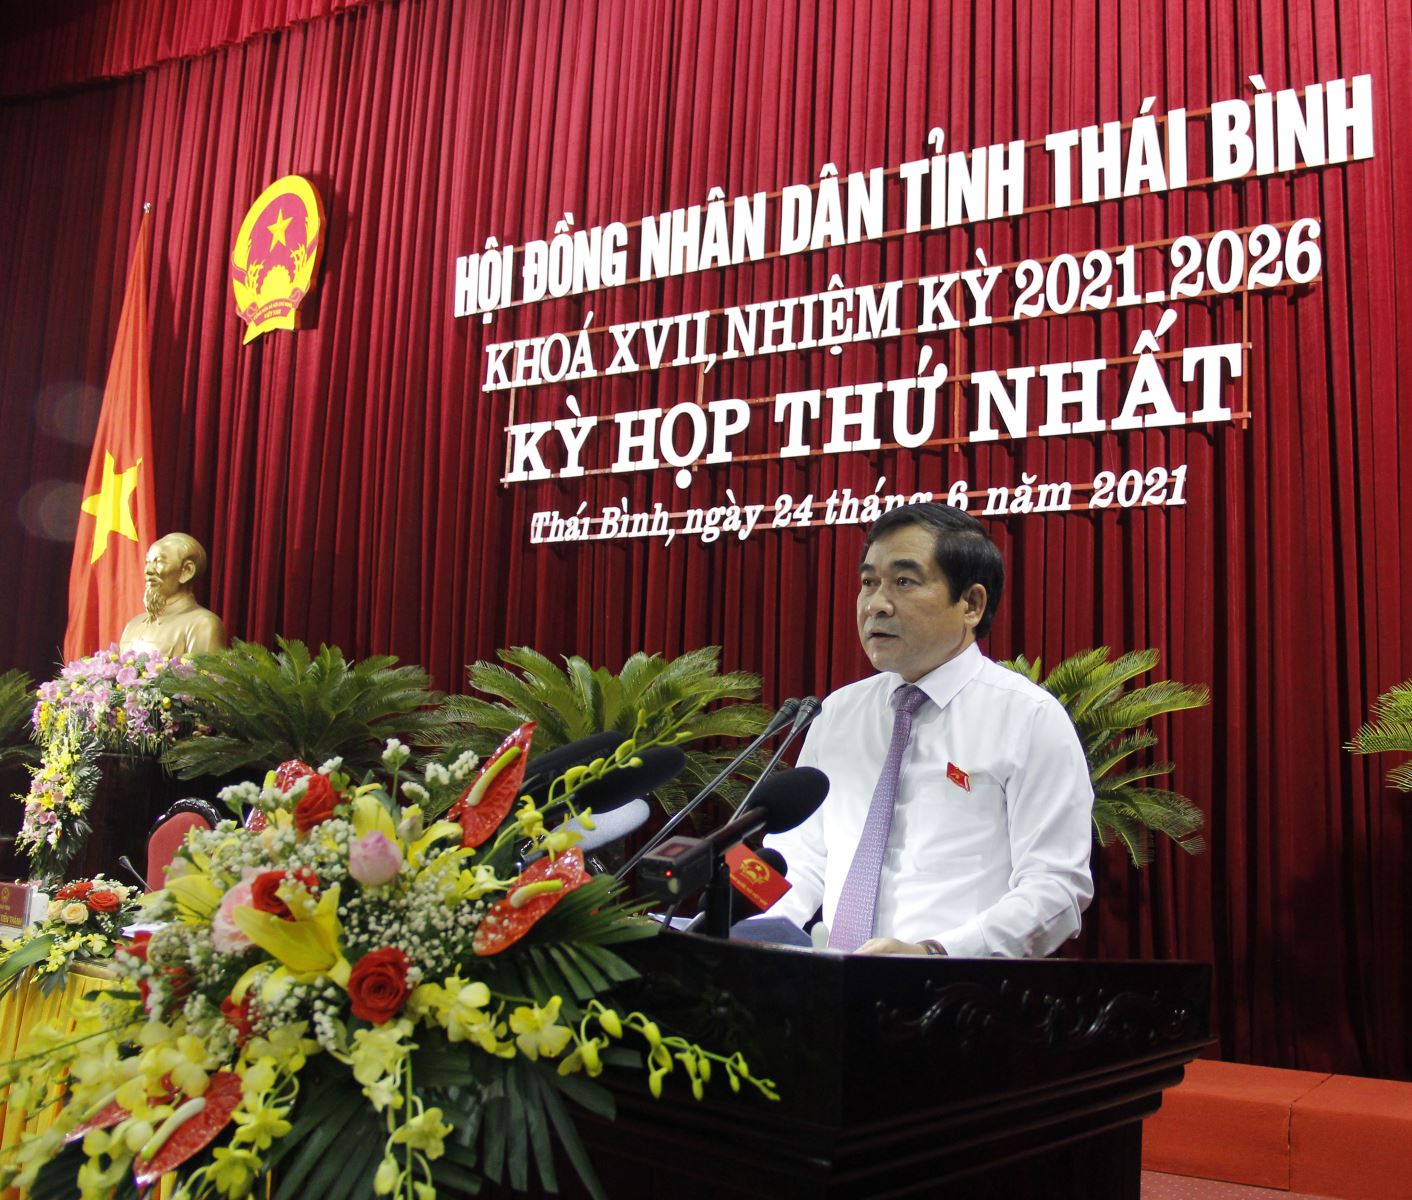 Phó Bí thư Thường trực Tỉnh ủy, Chủ tịch HĐND tỉnh Nguyễn Tiến Thành tuyên bố khai mạc kỳ họp